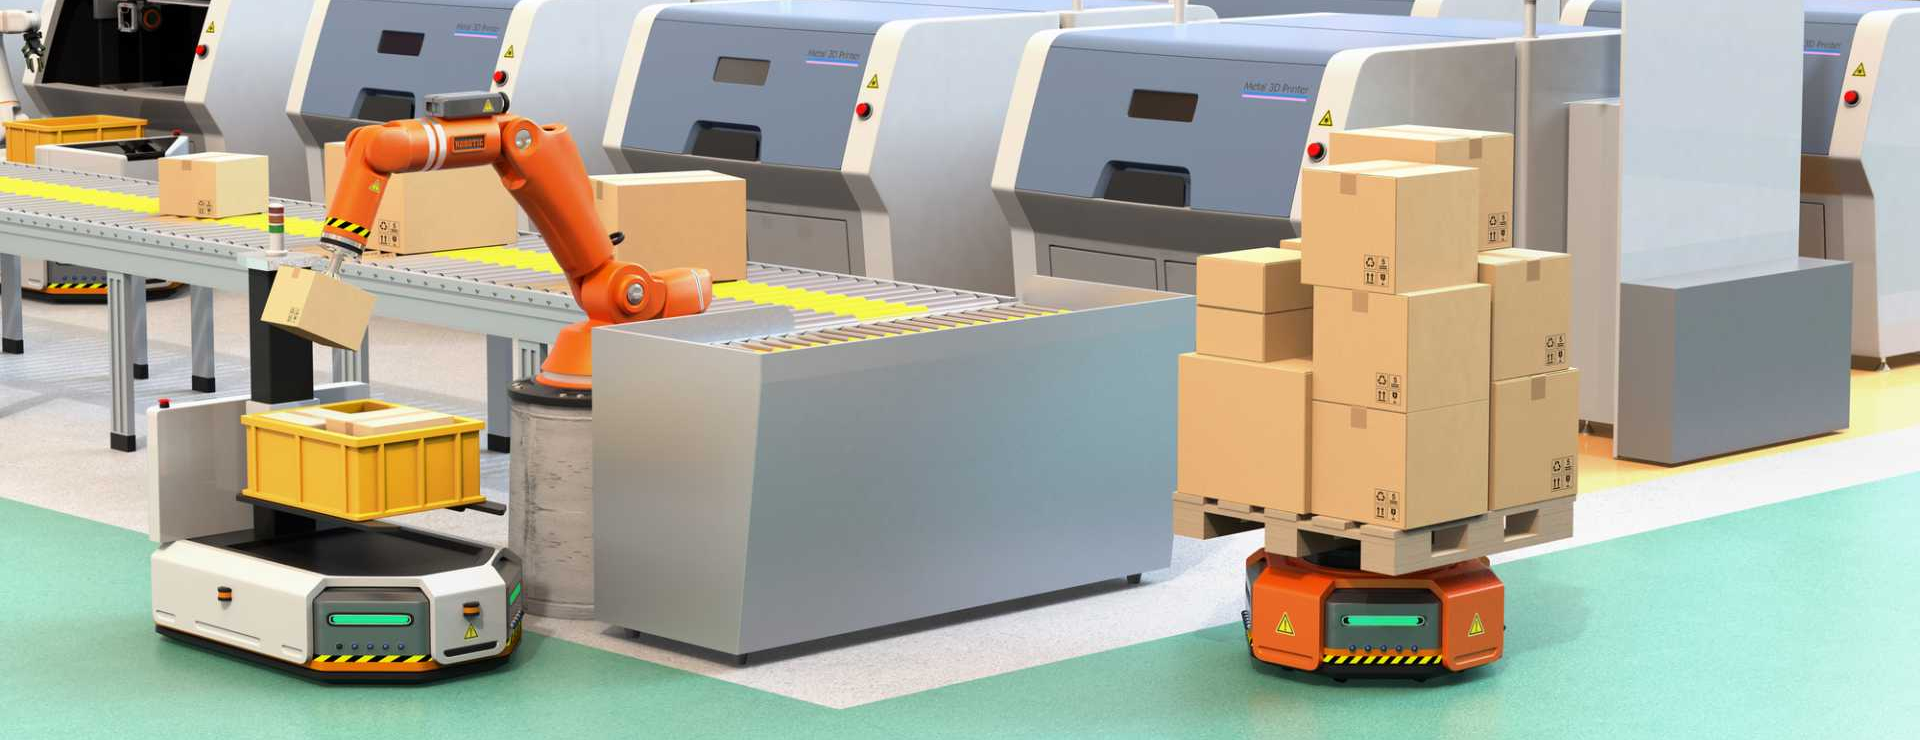 Autonomiczne roboty przemysłowe w miejsce automatycznych